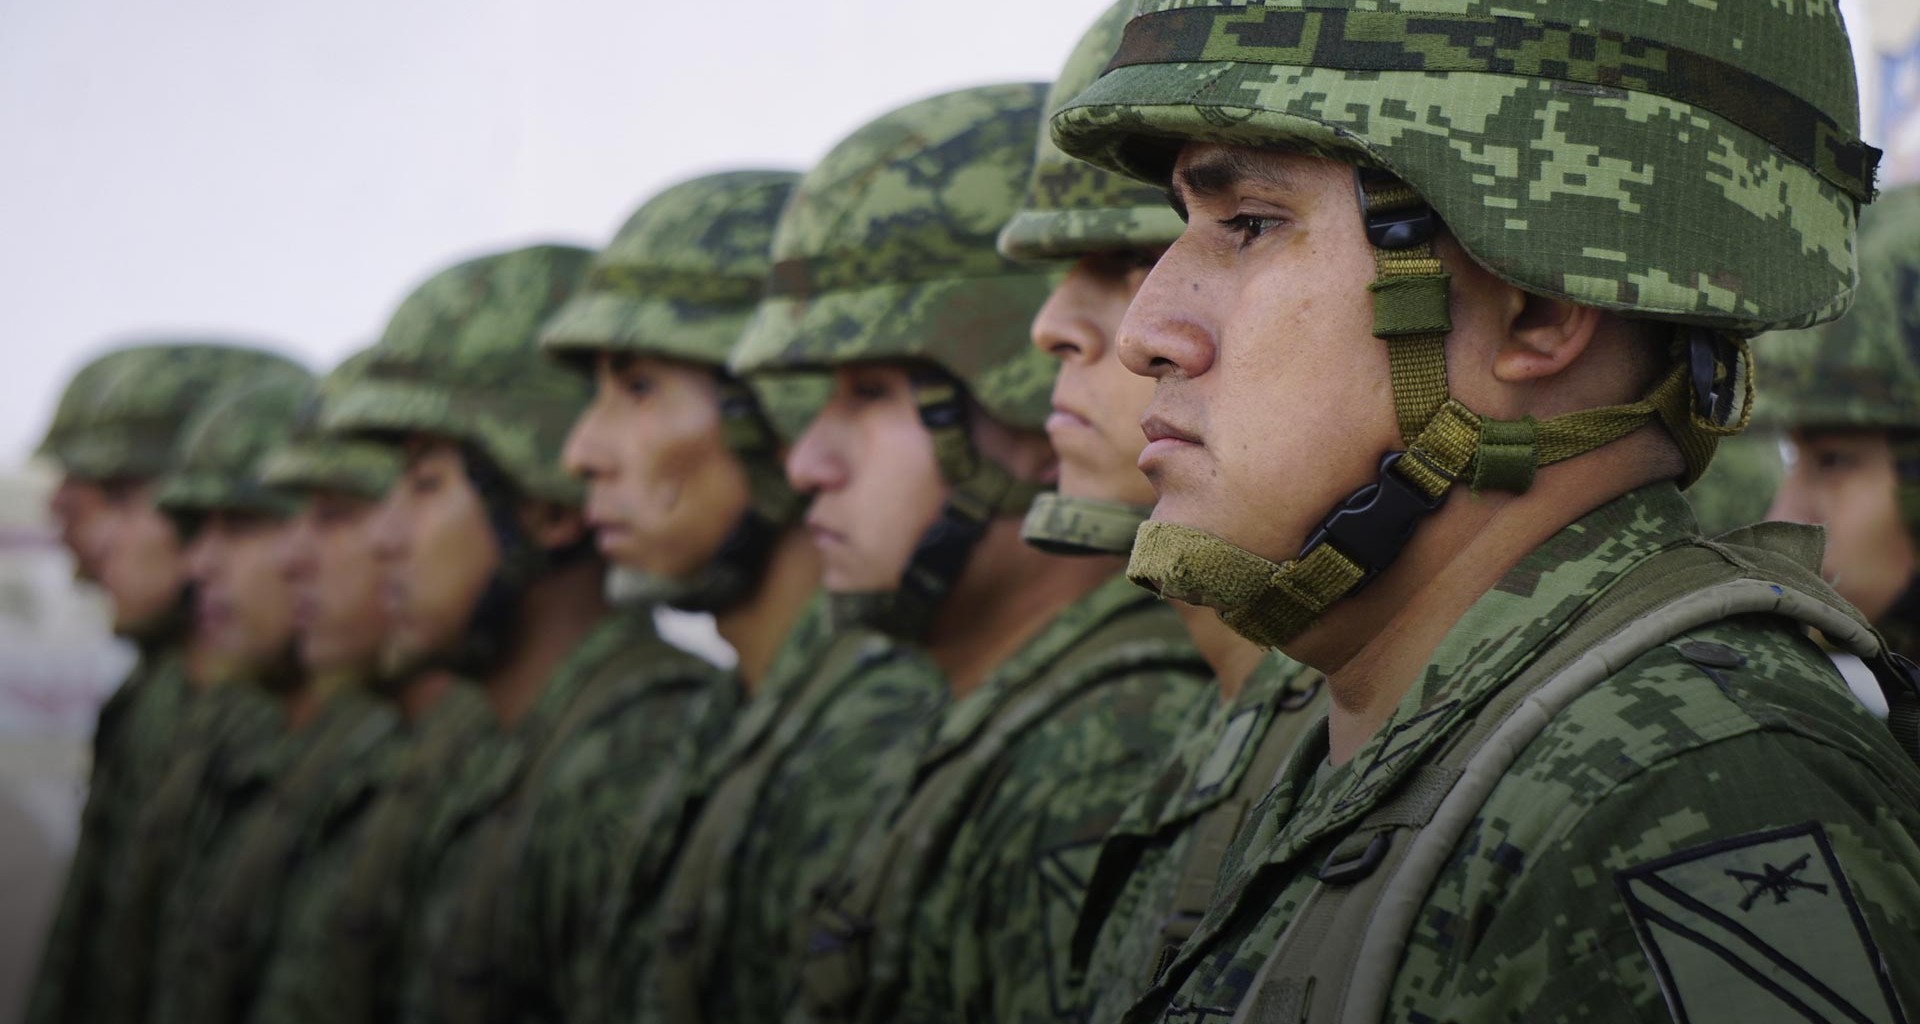 Ejército mexicano y Estado comparten visión, señalan especialistas